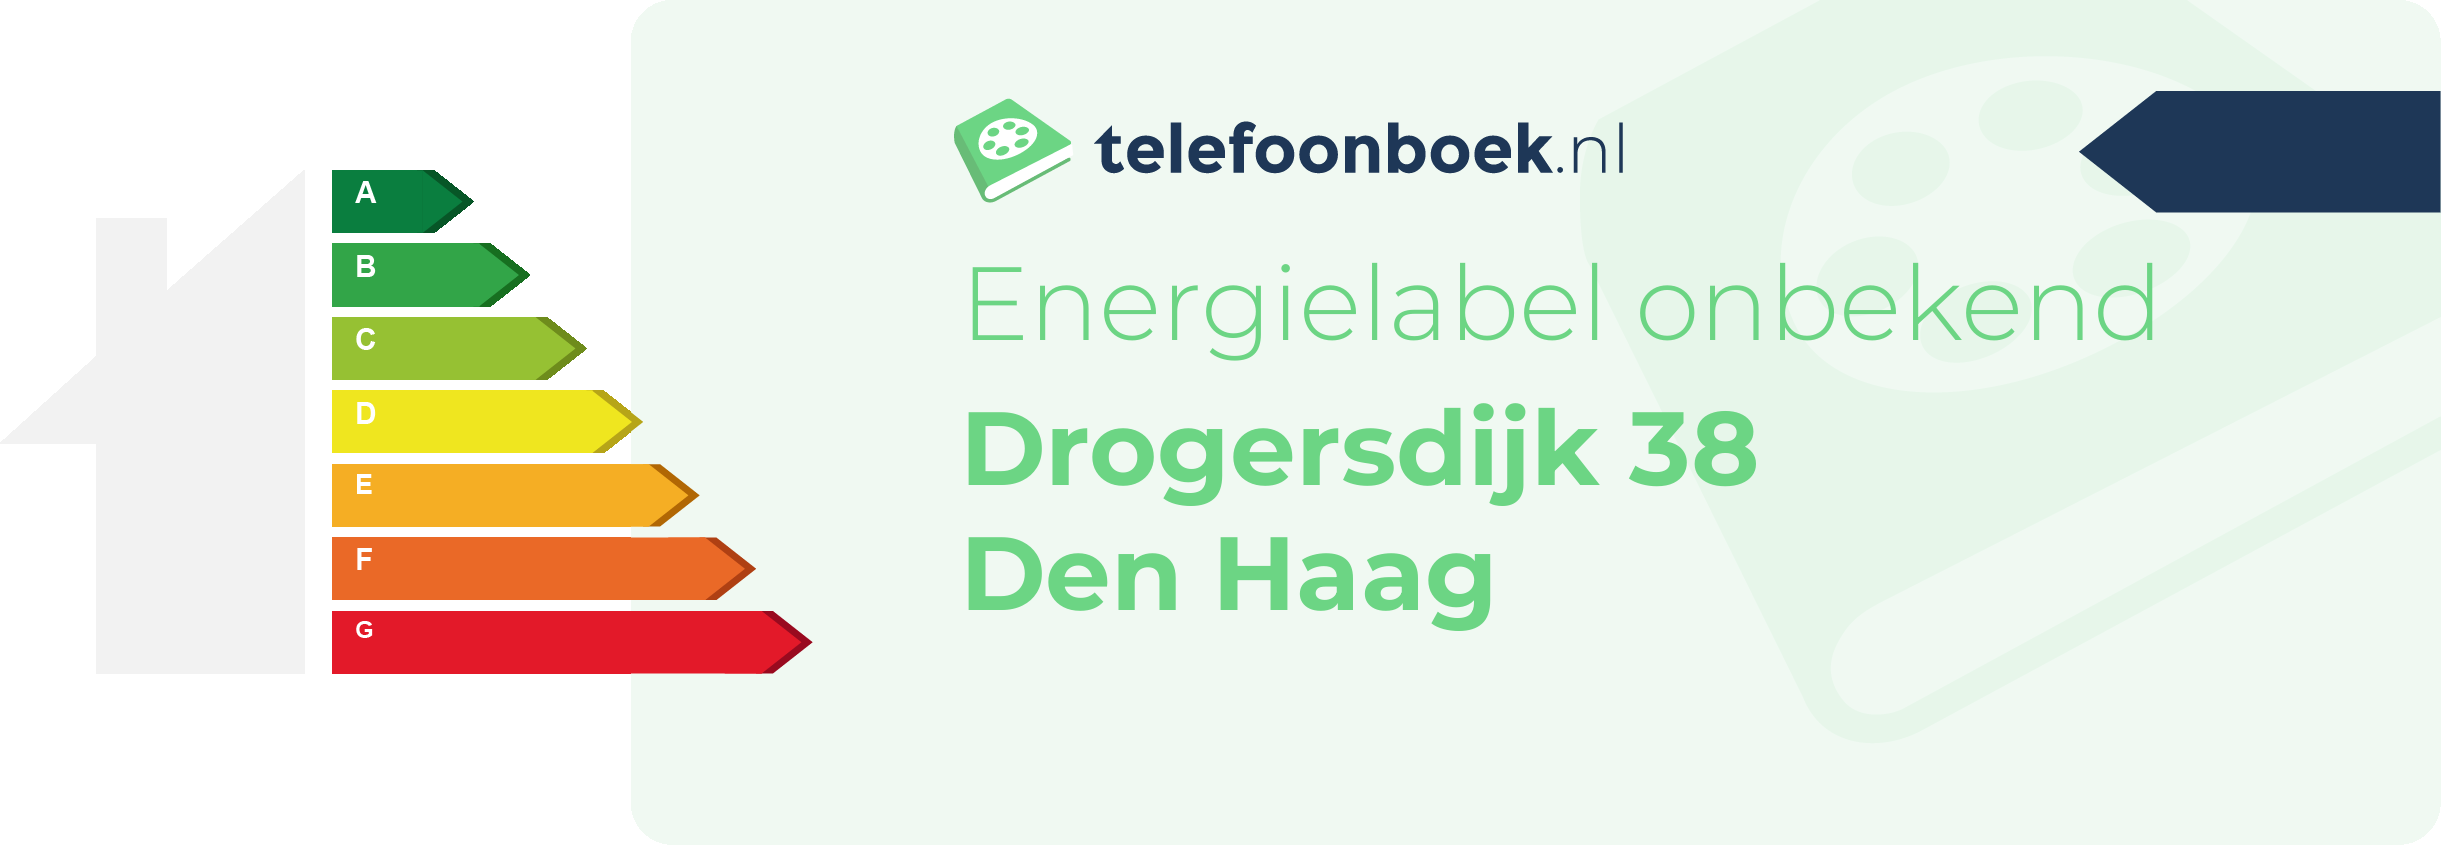 Energielabel Drogersdijk 38 Den Haag